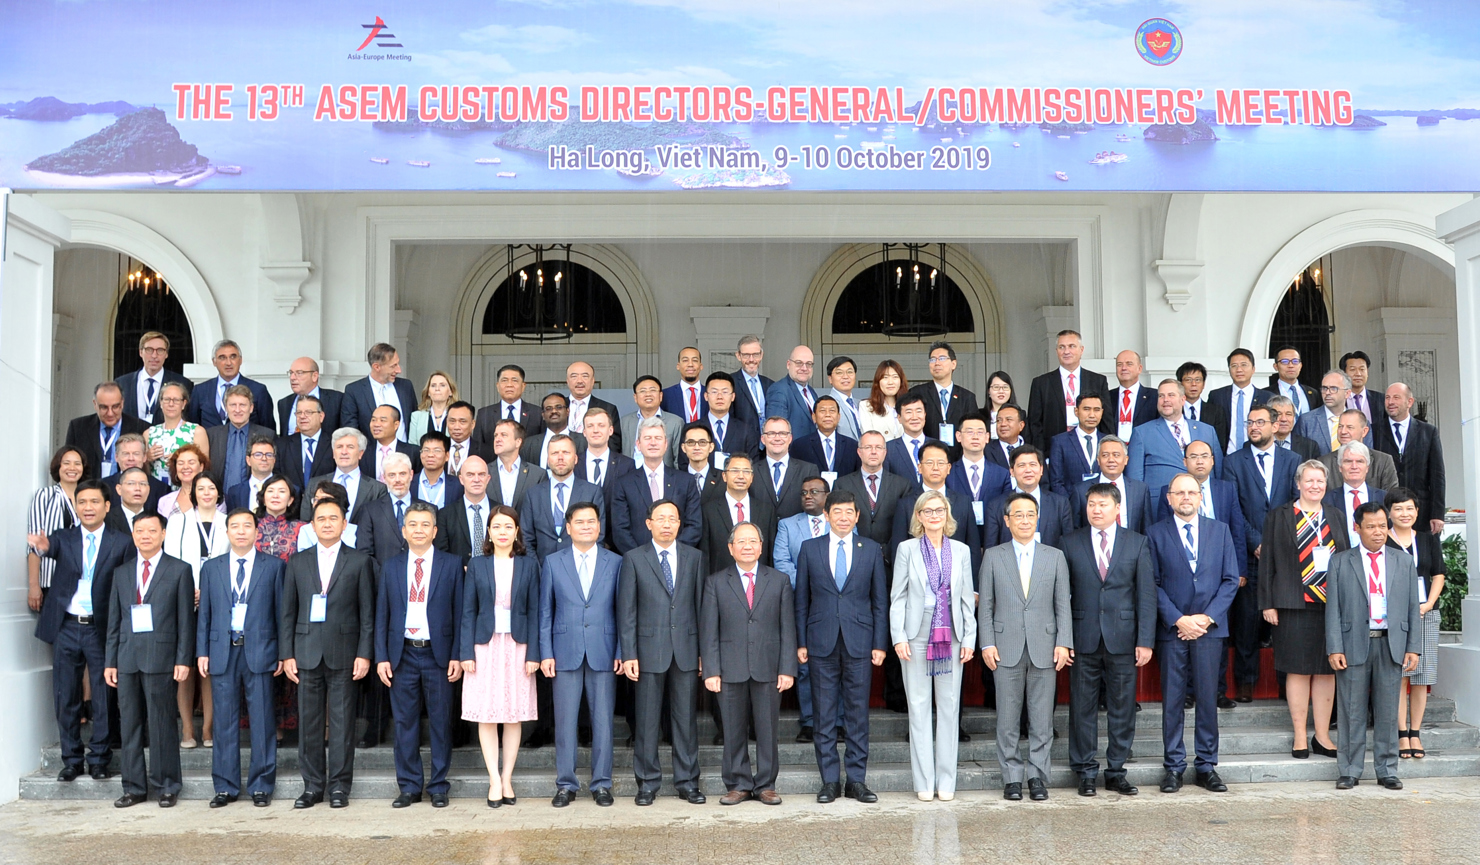 "Tuyên bố Hạ Long" thể hiện cam kết của các Tổng cục trưởng Hải quan ASEM về các mục tiêu và ưu tiên hợp tác hải quan ASEM trong tương lai.